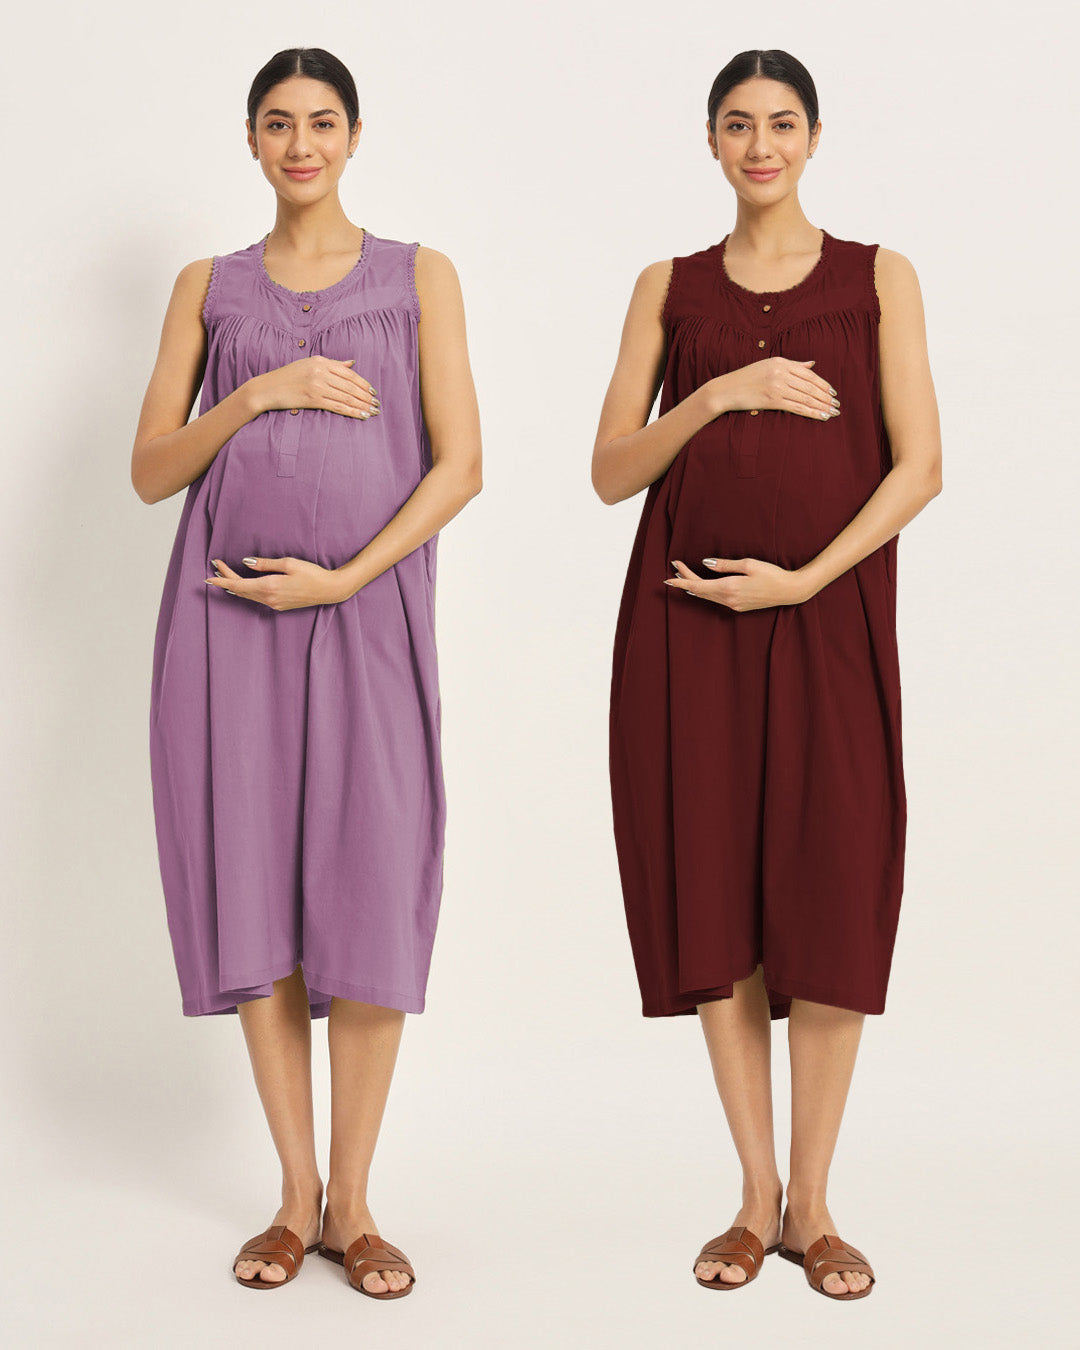 Combo: Iris Pink & Russet Red Pregnan-Queen Maternity & Nursing Dress